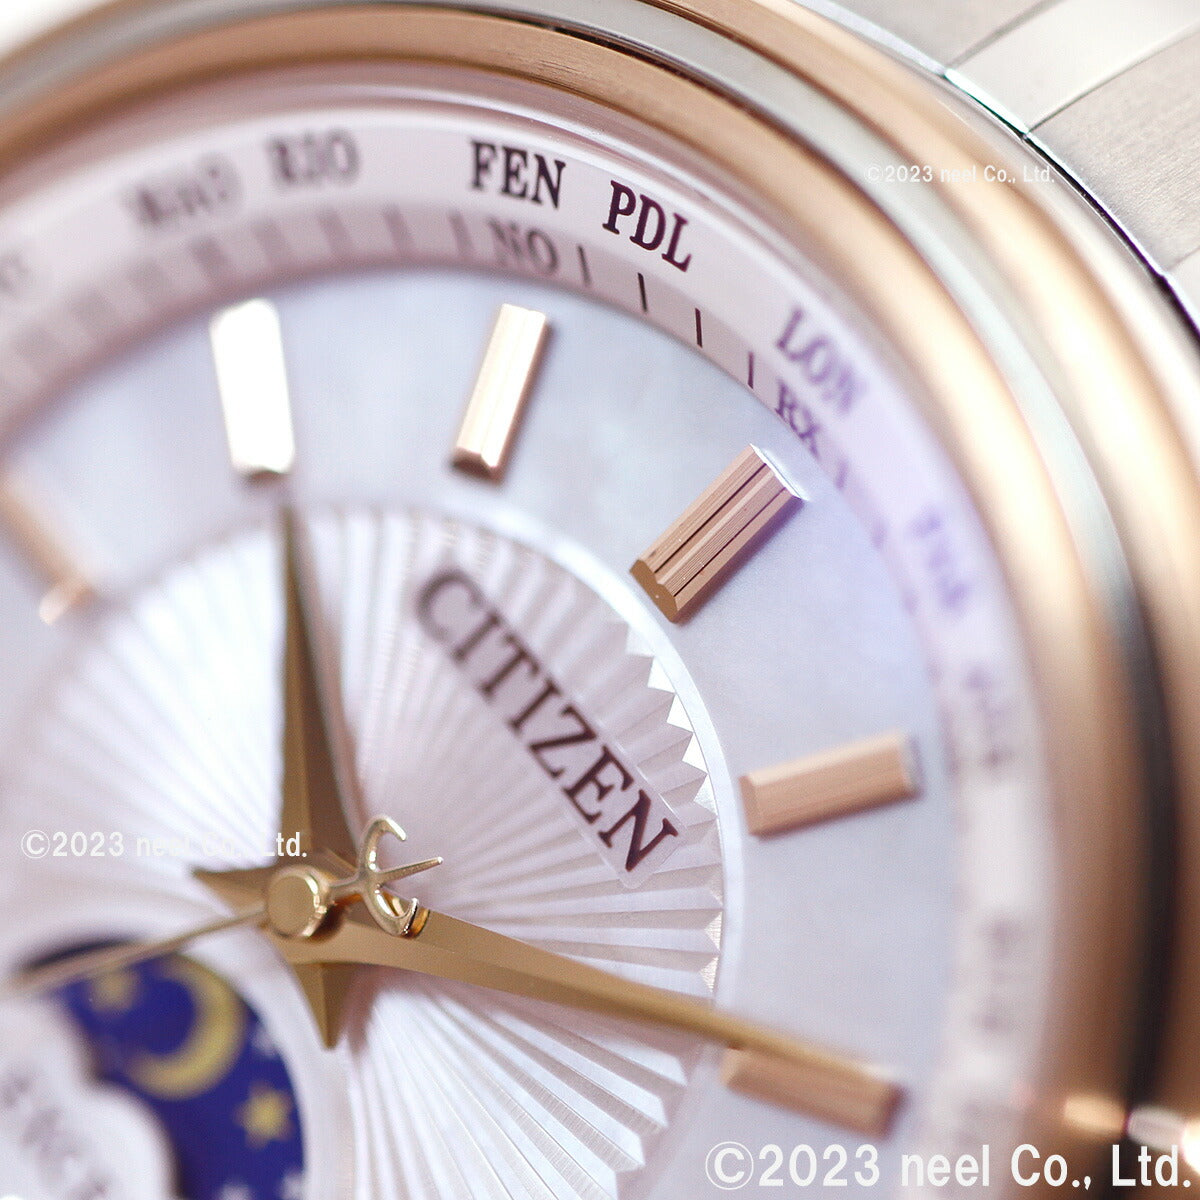 シチズン エクシード CITIZEN EXCEED エコドライブ 電波時計 45周年記念 ペアモデル レディース 腕時計 EE1014-61W